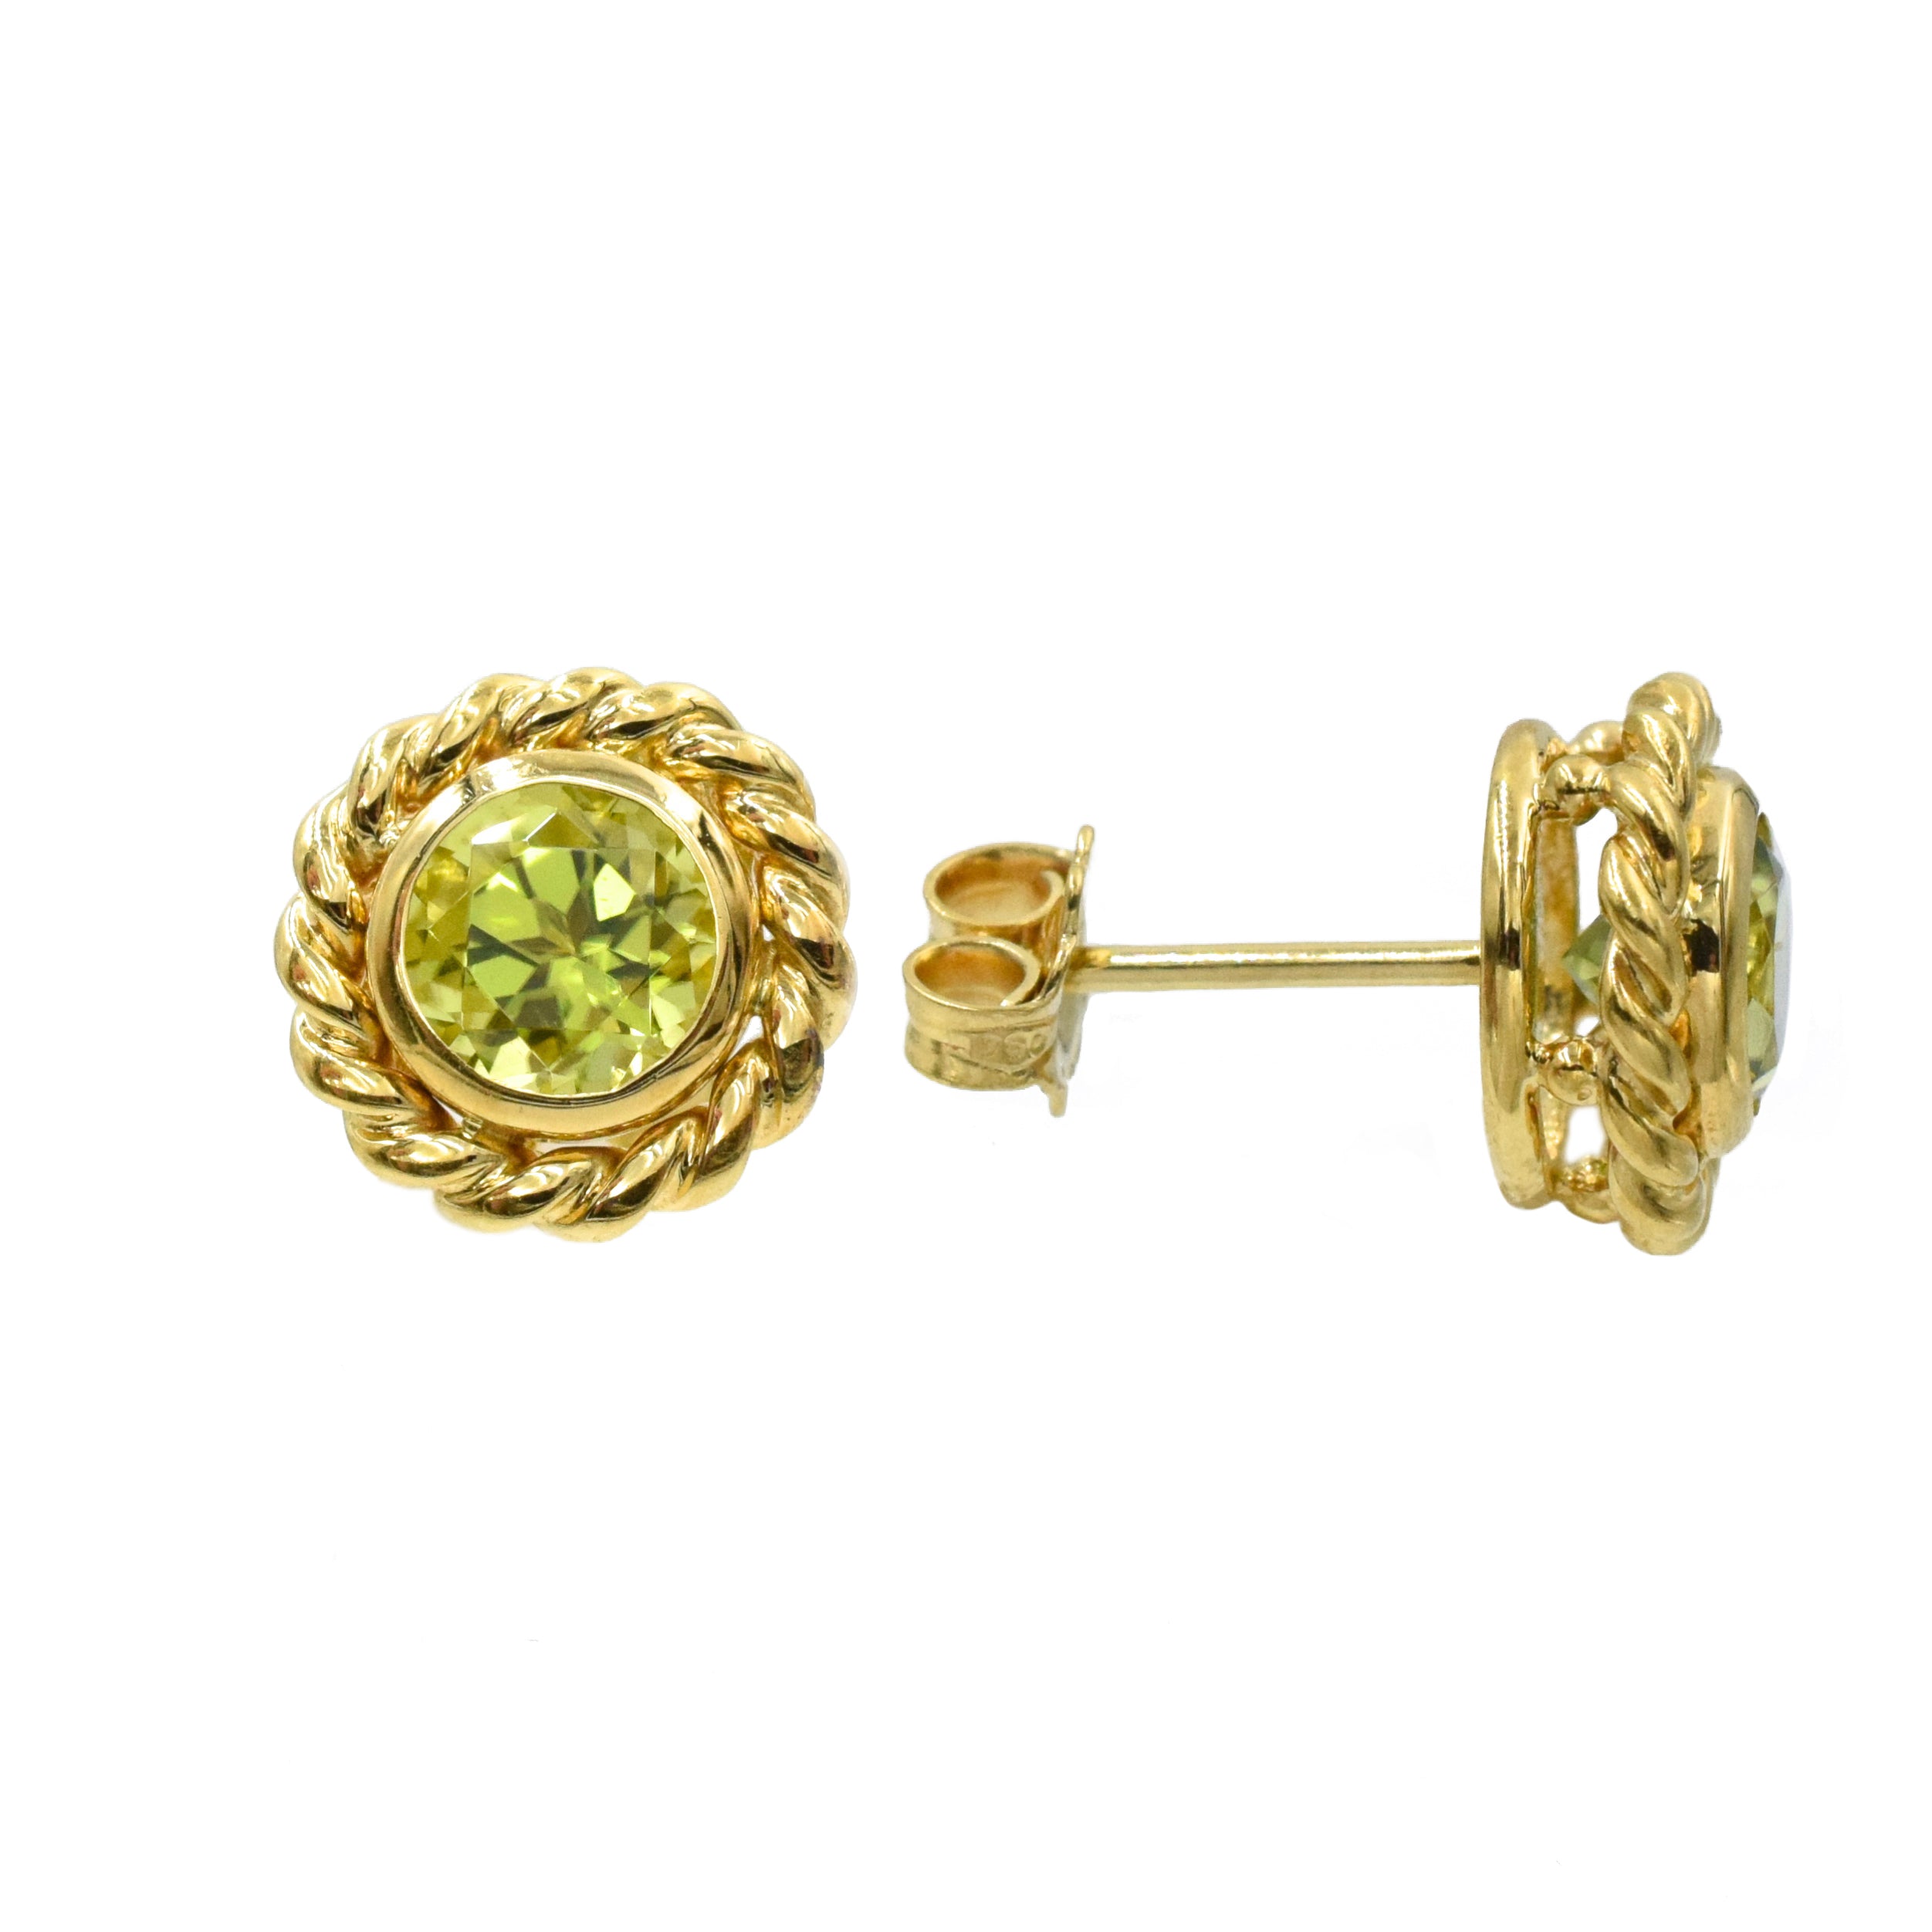 Tiffany & Co 1.60ct Peridot Stud Earrings in 18k Yellow Gold